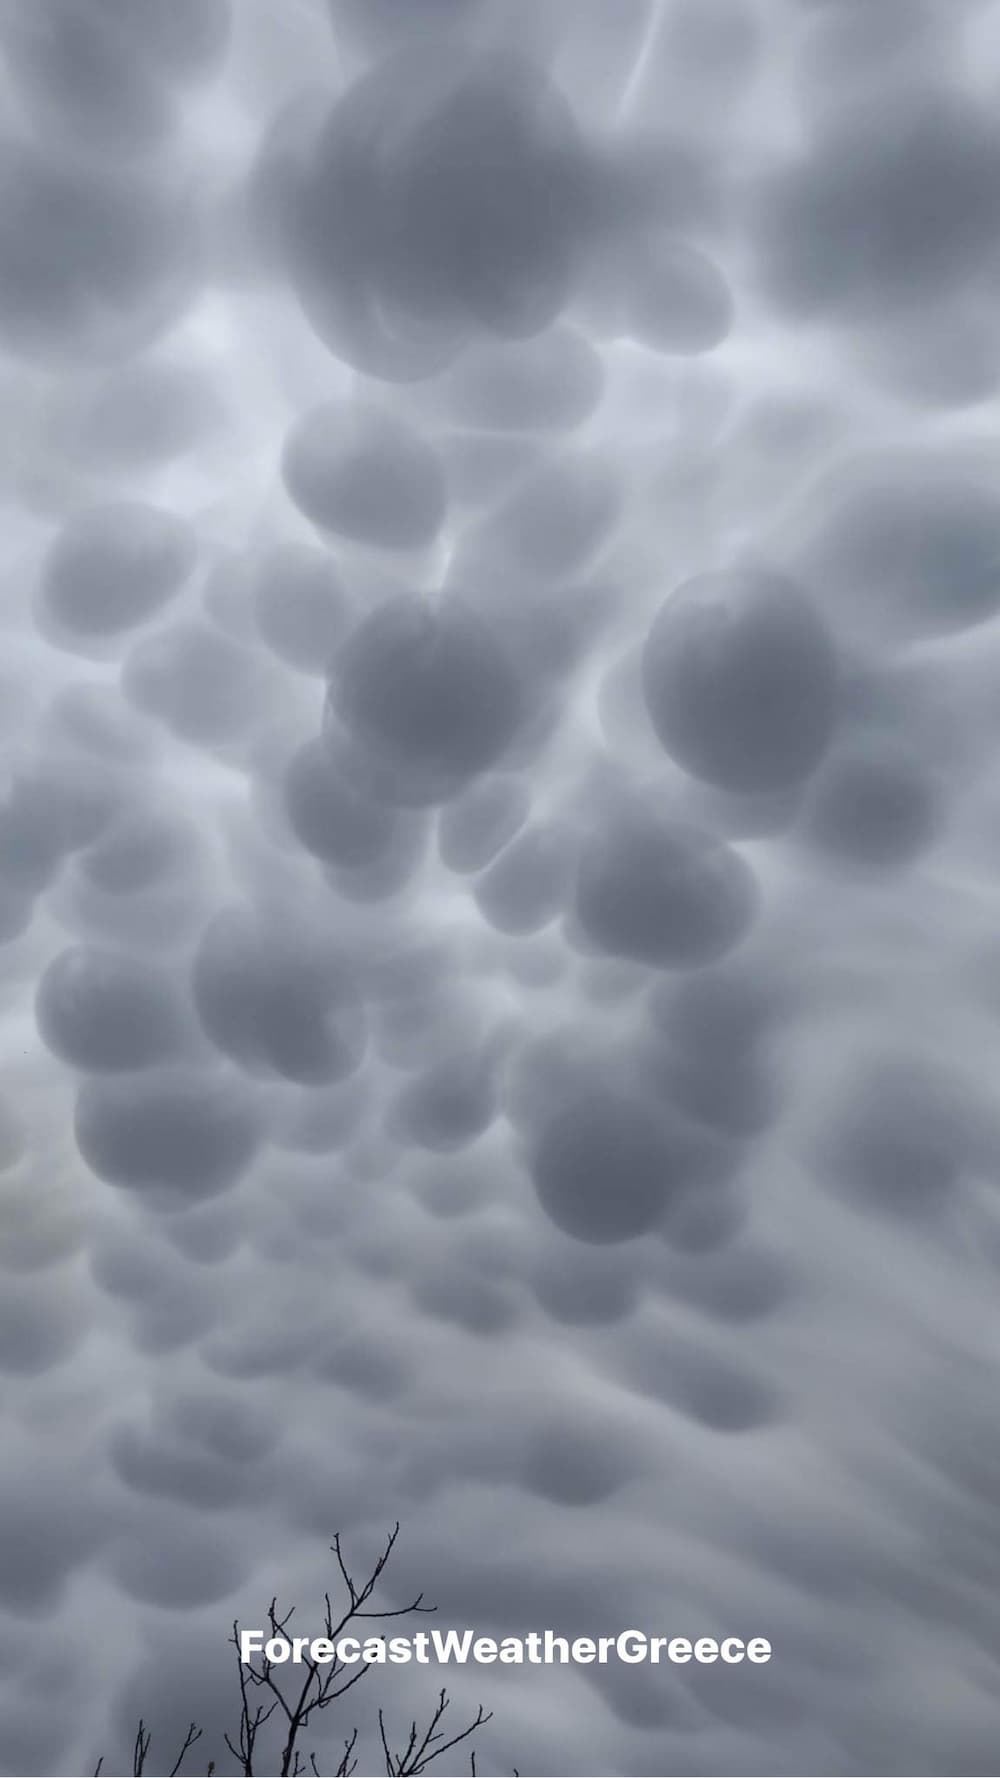 Η κακοκαιρία «Ilina» έφερε τα σύννεφα «Μammatus» σε Μεσσηνία και Λακωνία - Τι προμηνύουν με την εμφάνισή τους (εικόνες)